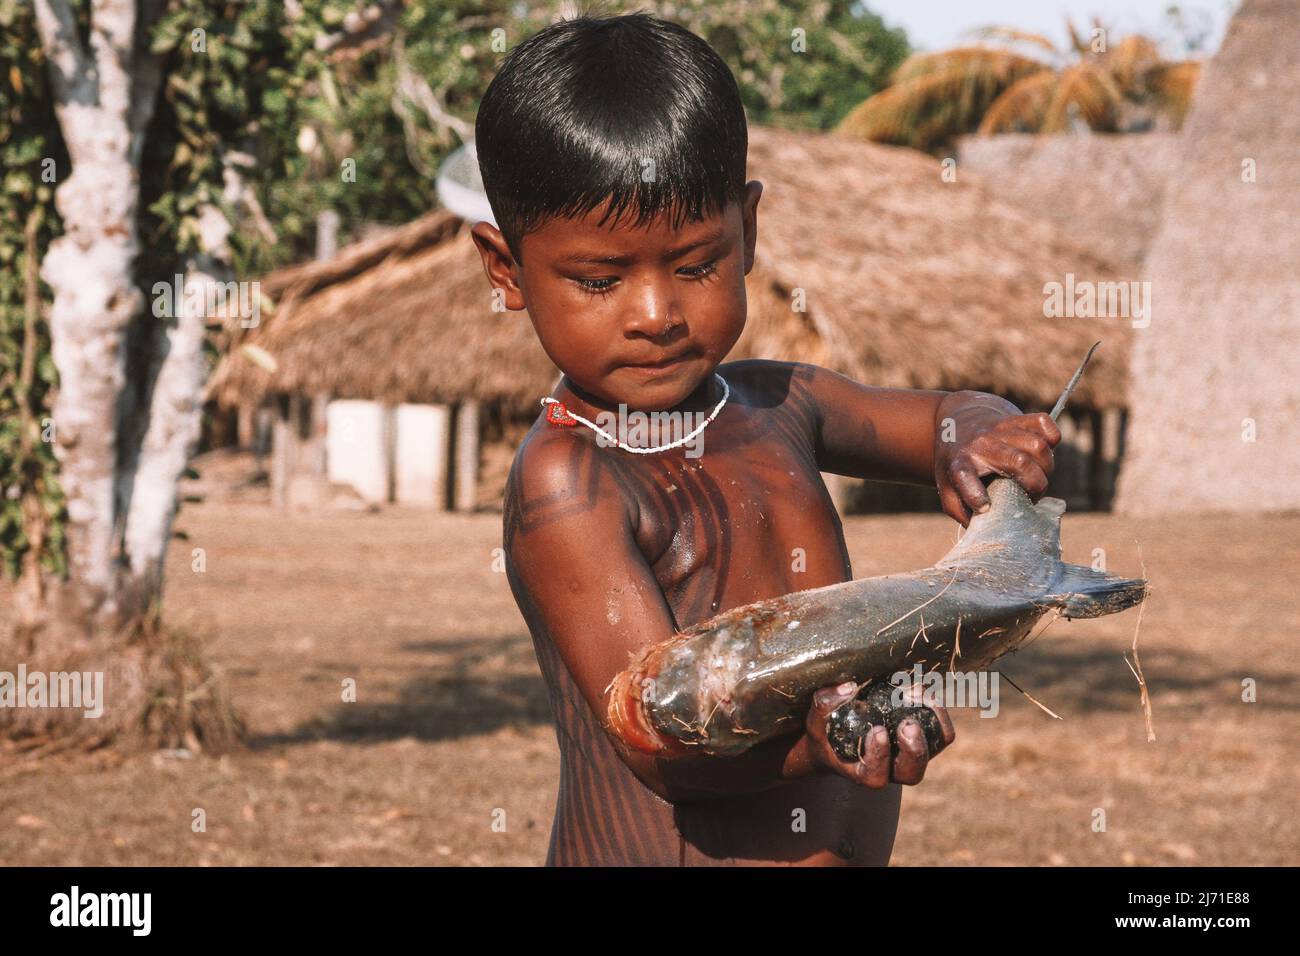 Bambino indiano della tribù Asurini nell'Amazzonia brasiliana, tenendo un pesce con le sue mani piccole. Foto Stock